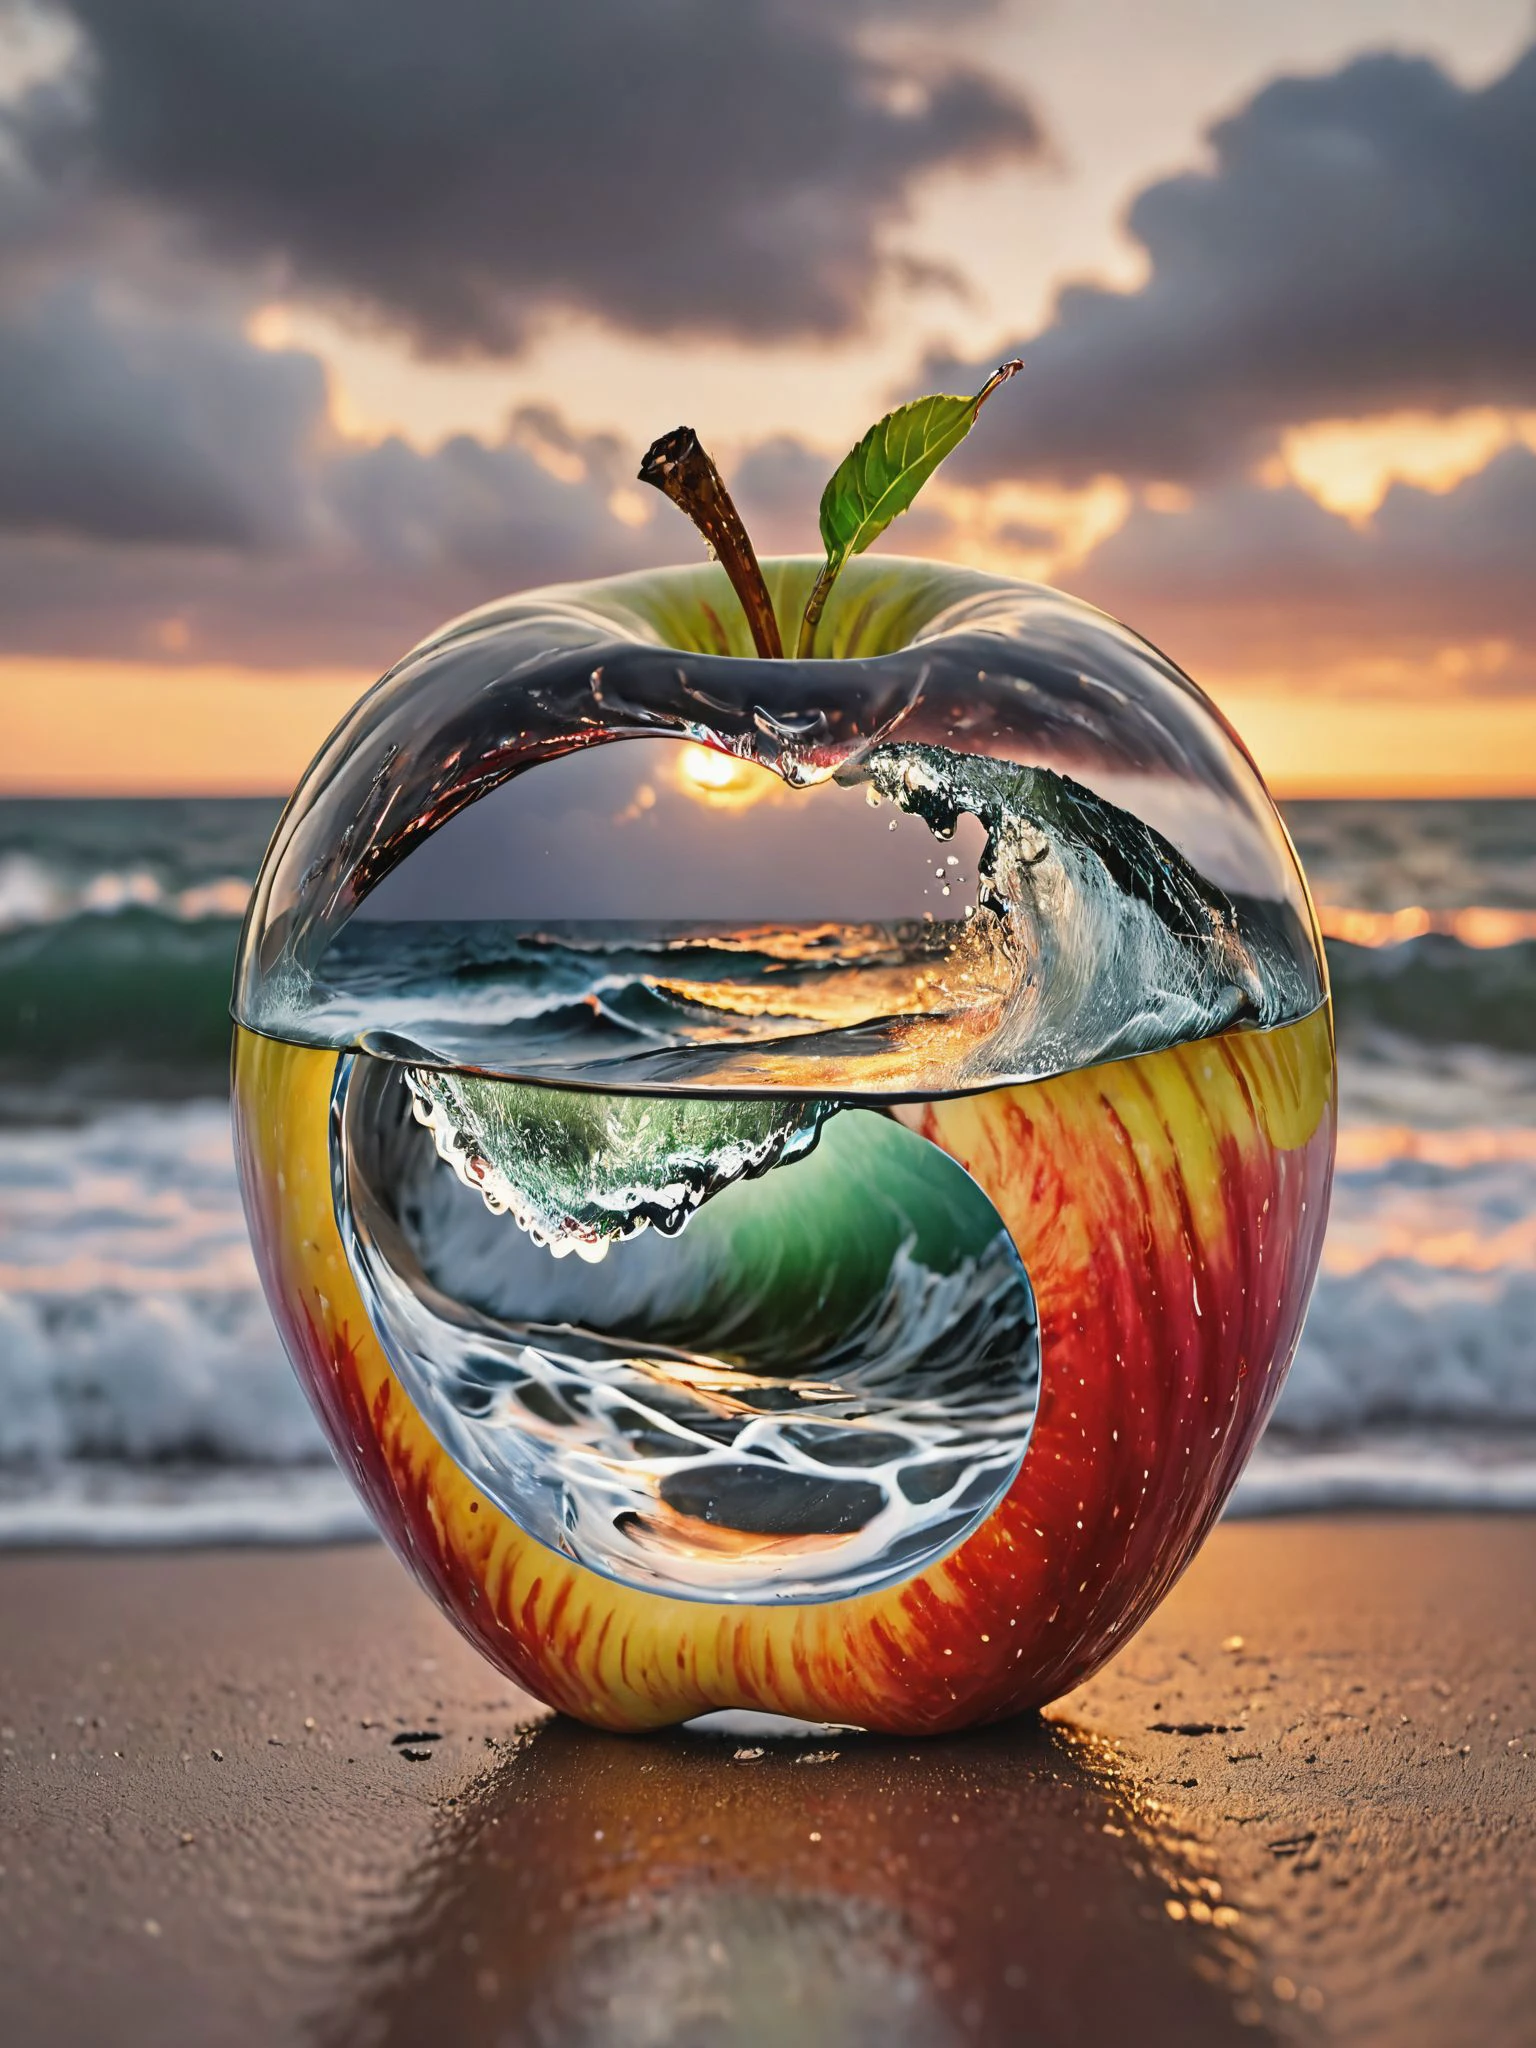 非凡で非現実的な主題を捉えた写真を想像してみて: 透明なリンゴ, 透明で完璧な形, 非常に詳細な, 内部で荒れ狂う小さな海. リンゴはフレームの中央に堂々と置かれている, 滑らか, ガラスのような表面が光を反射し、内部のダイナミックな光景を覗き見ることができる. 内で, the stormy sea is a marvel of miniaturization - tiny waves crest and crash with 現実的 ferocity, そしてよく見ると, 微細な稲妻の閃光と風の渦が見分けられる, 嵐のドラマ性を高める. 写真の背景は意図的にシンプルにしています, おそらく柔らかい, ニュートラルカラーまたは微妙なグラデーション, リンゴの穏やかな外観と野生の果実の印象的なコントラストにすべての注目が集まるようにする, 混沌とした海の景色がそこにはある. 照明が鍵, illuminating the apple in a way that highlights the 複雑なディテール of the storm inside while maintaining the overall clarity and impact of the image. (非常に詳細な, 現実的, 完璧な照明, 鮮やかな色彩,複雑なディテール),((そばかす:0.3),細部までこだわった肌:1.3), 最高品質, 傑作, 高解像度, 不条理な, incredibly 不条理な, ファイルサイズが大きい, 壁紙, カラフル,8k,RAW写真 